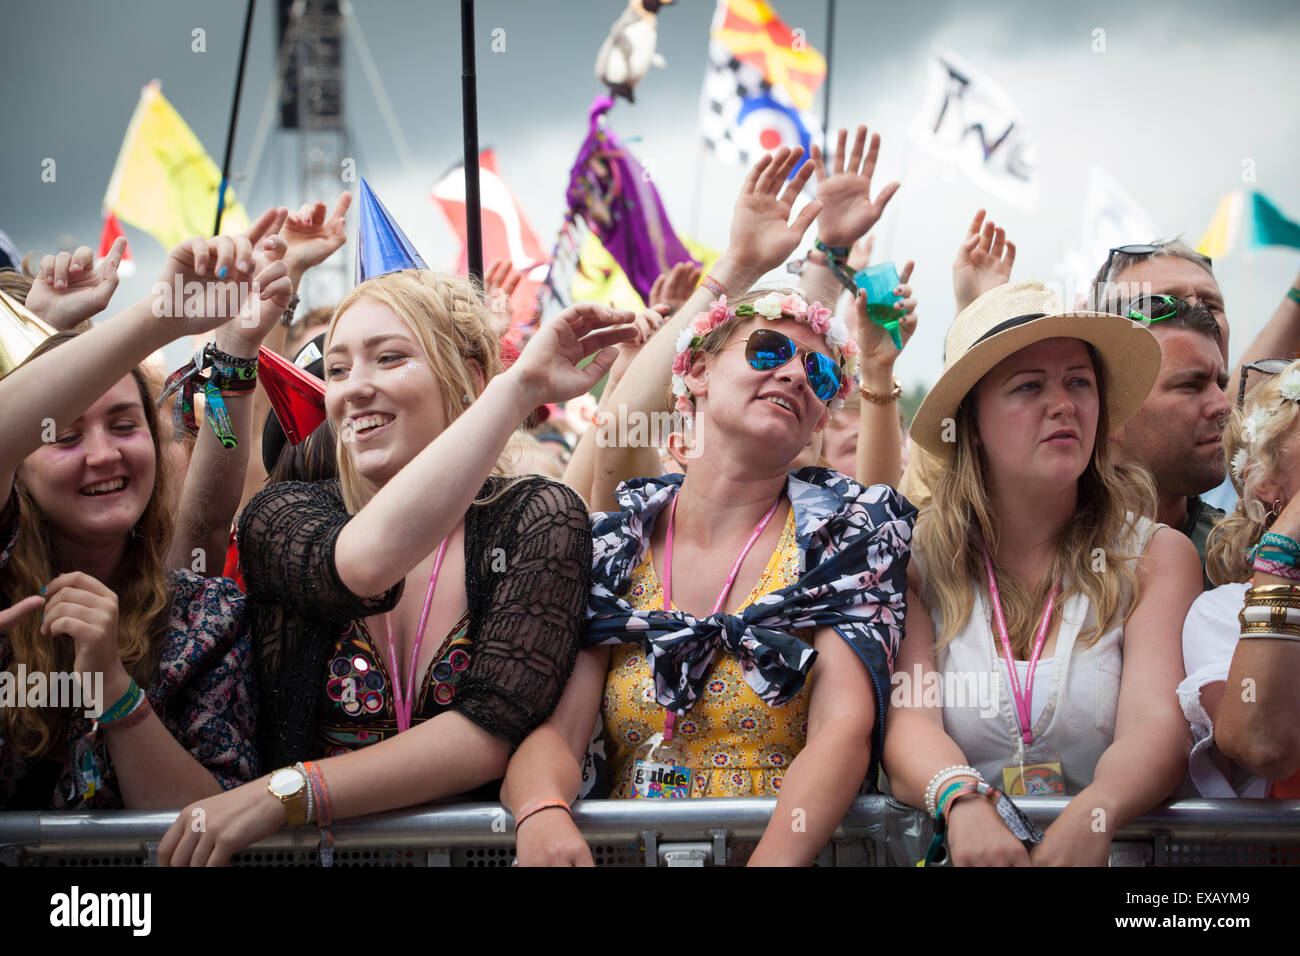 La foule au stade de pyramide, Festival de musique de Glastonbury, Somerset UK 2015 Banque D'Images